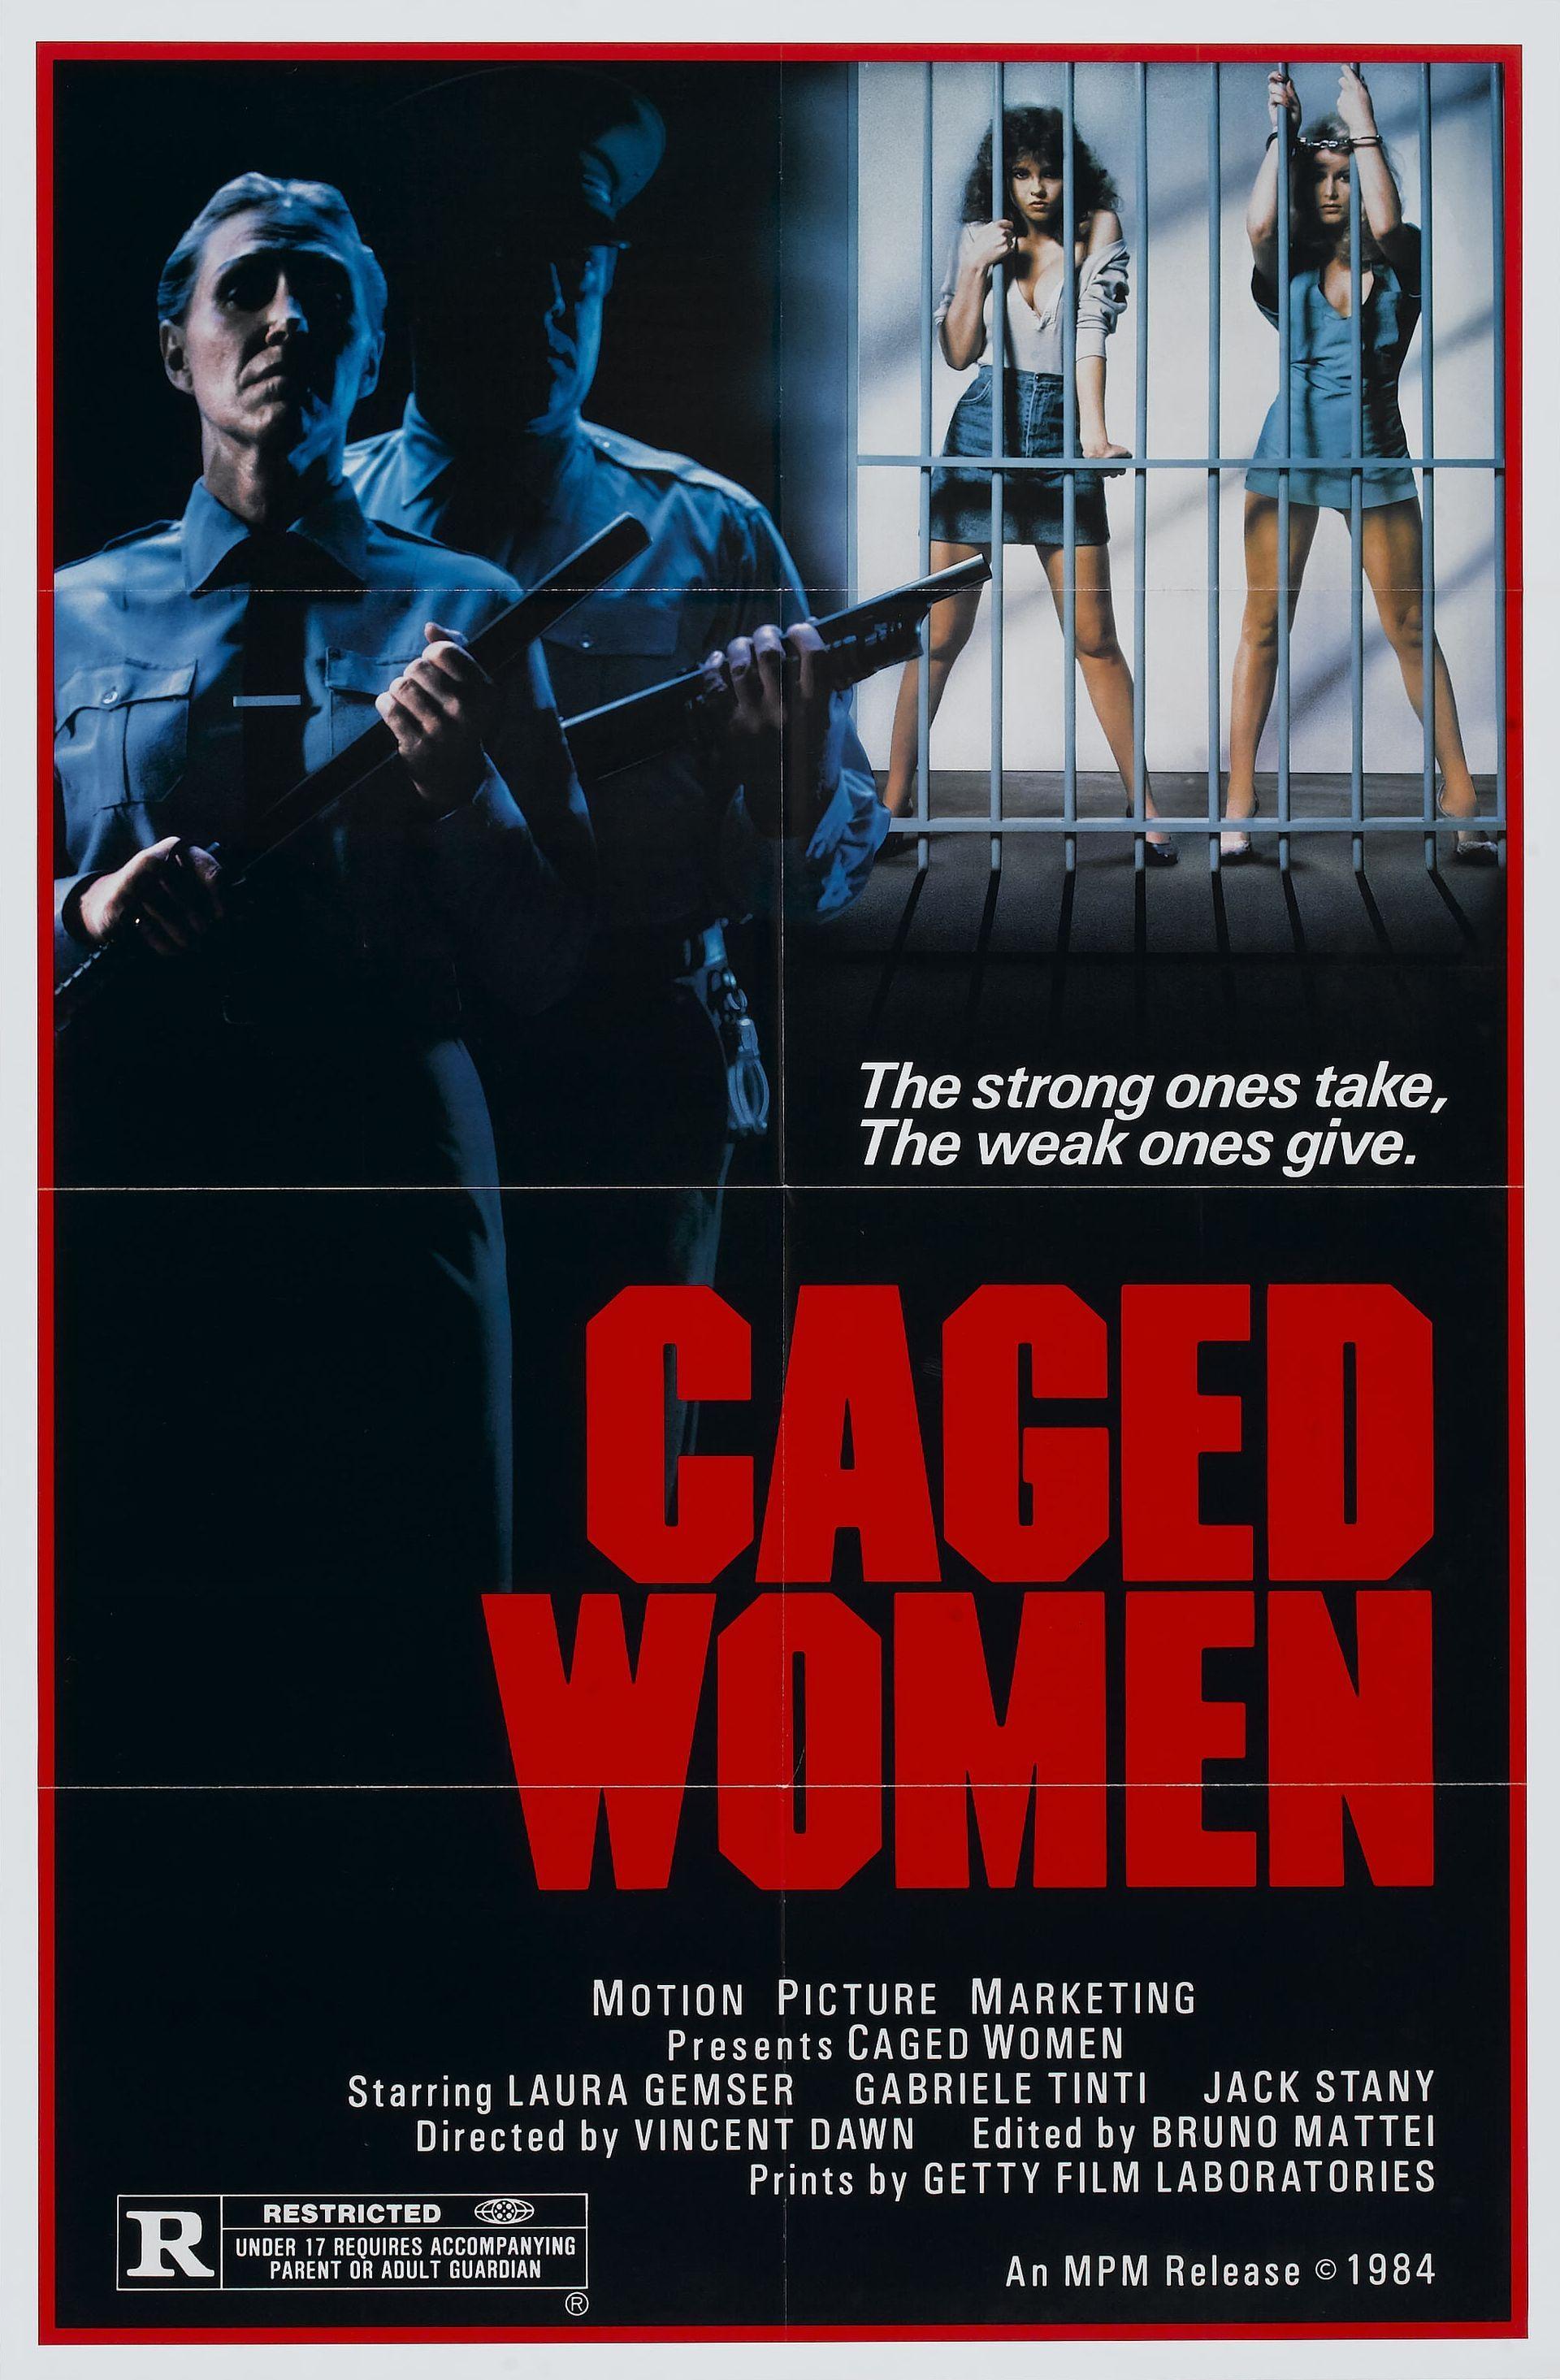 Постер фильма Violenza in un carcere femminile